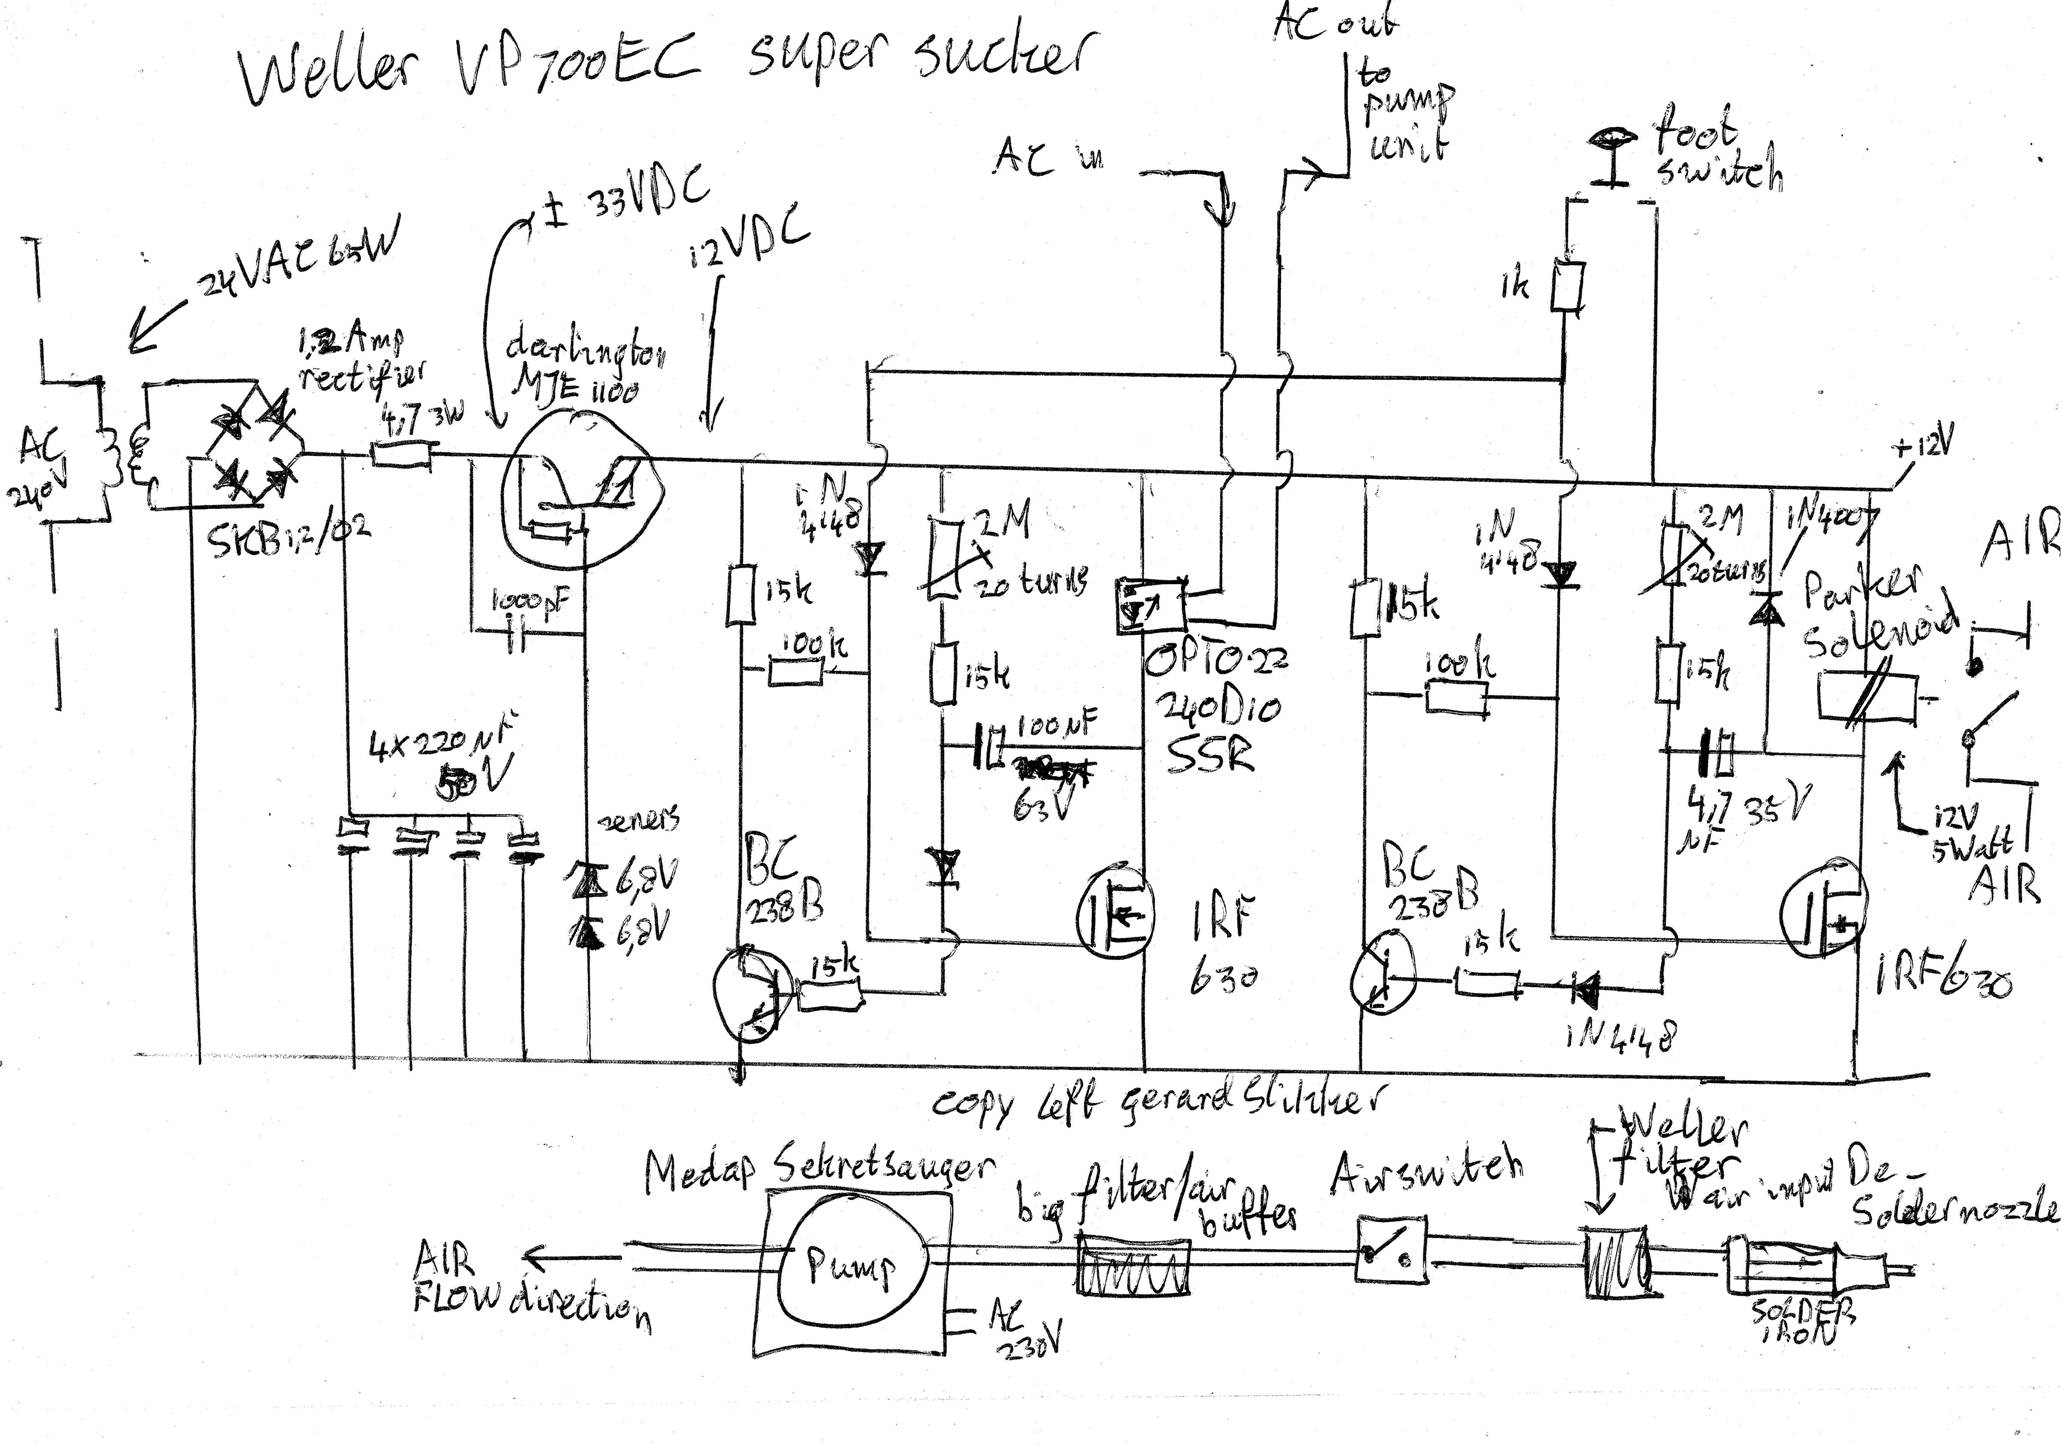 weller vp700ec schematic schaltkreis drawing